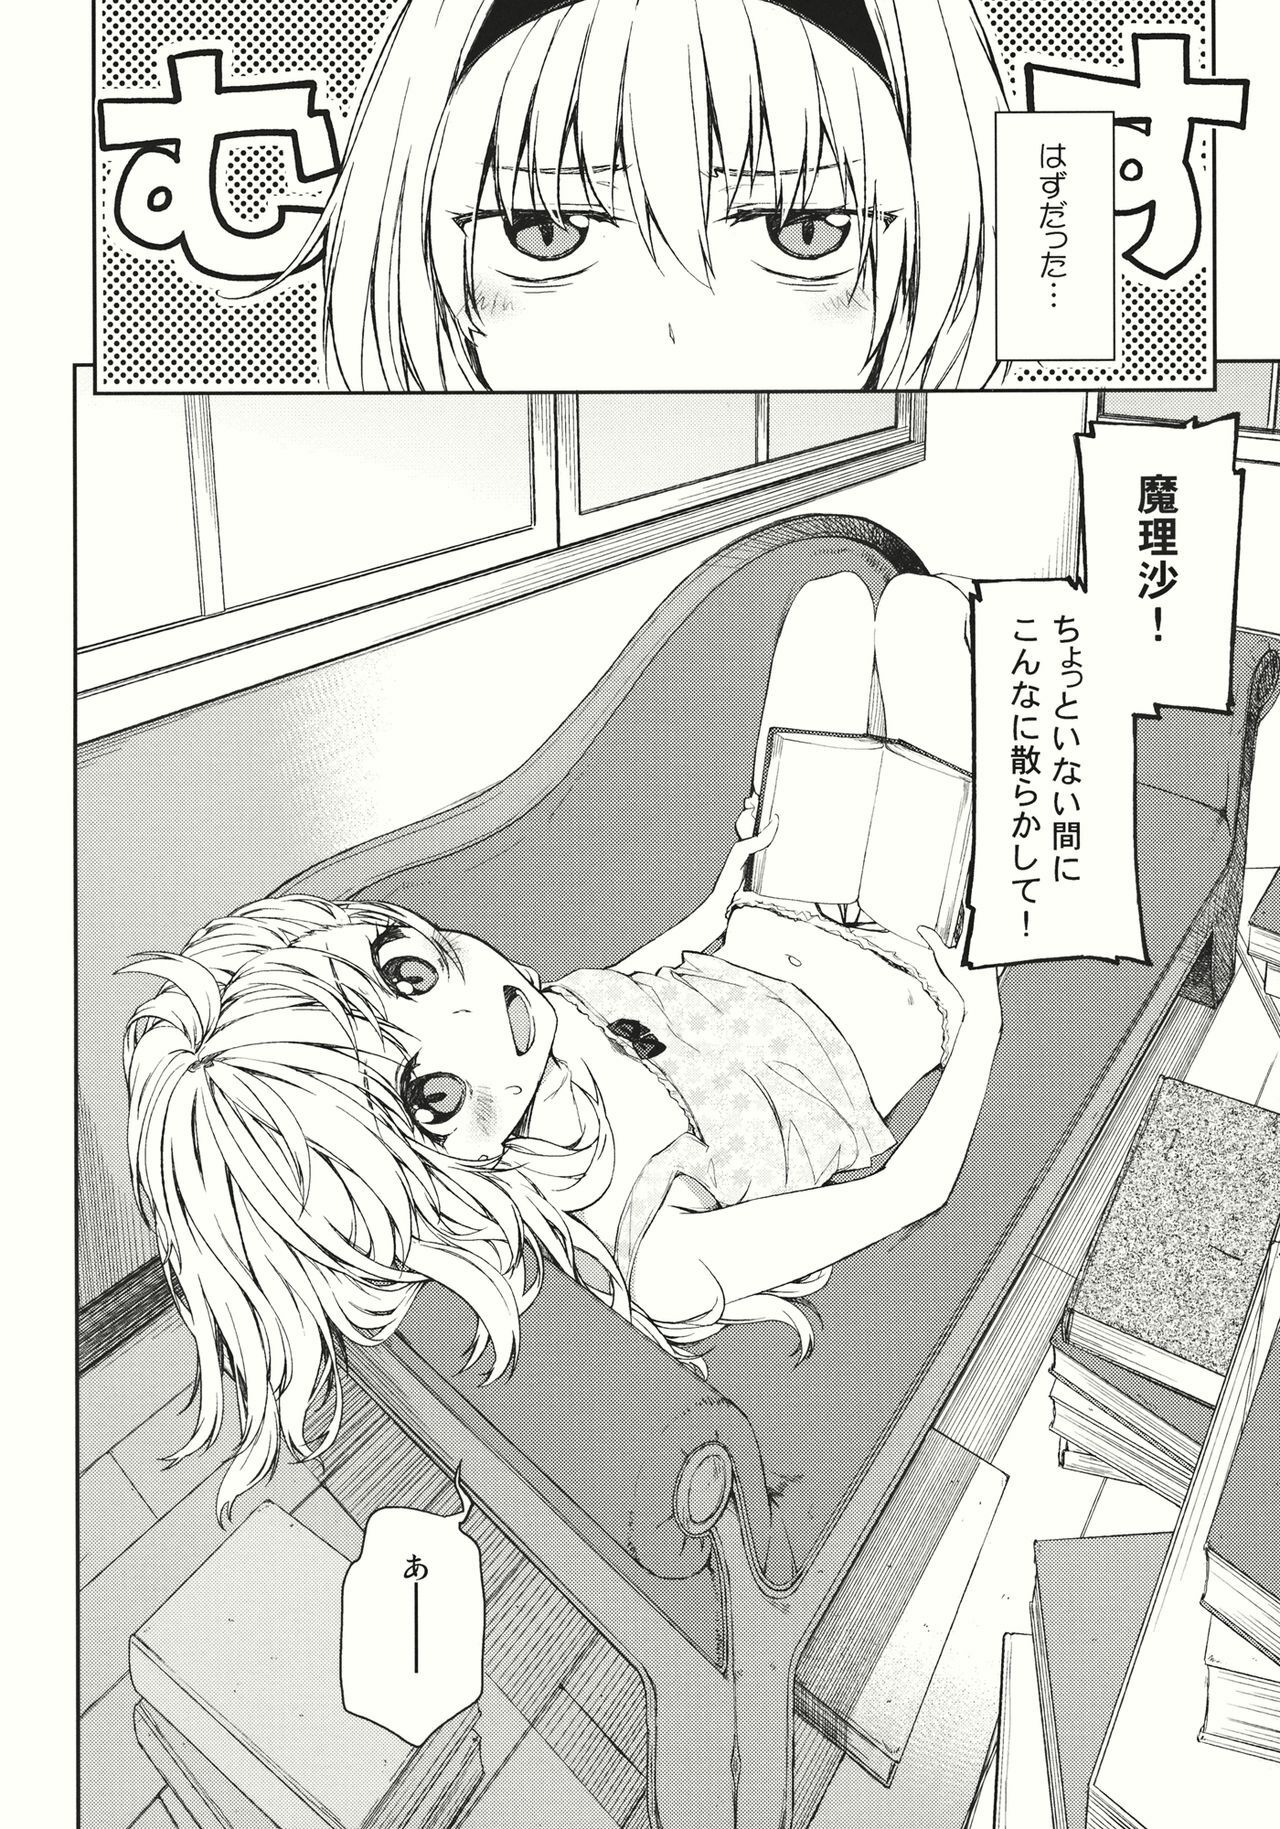 (Reitaisai 9) [Ichinose (Tarou)] twinkle star (Touhou Project) page 6 full